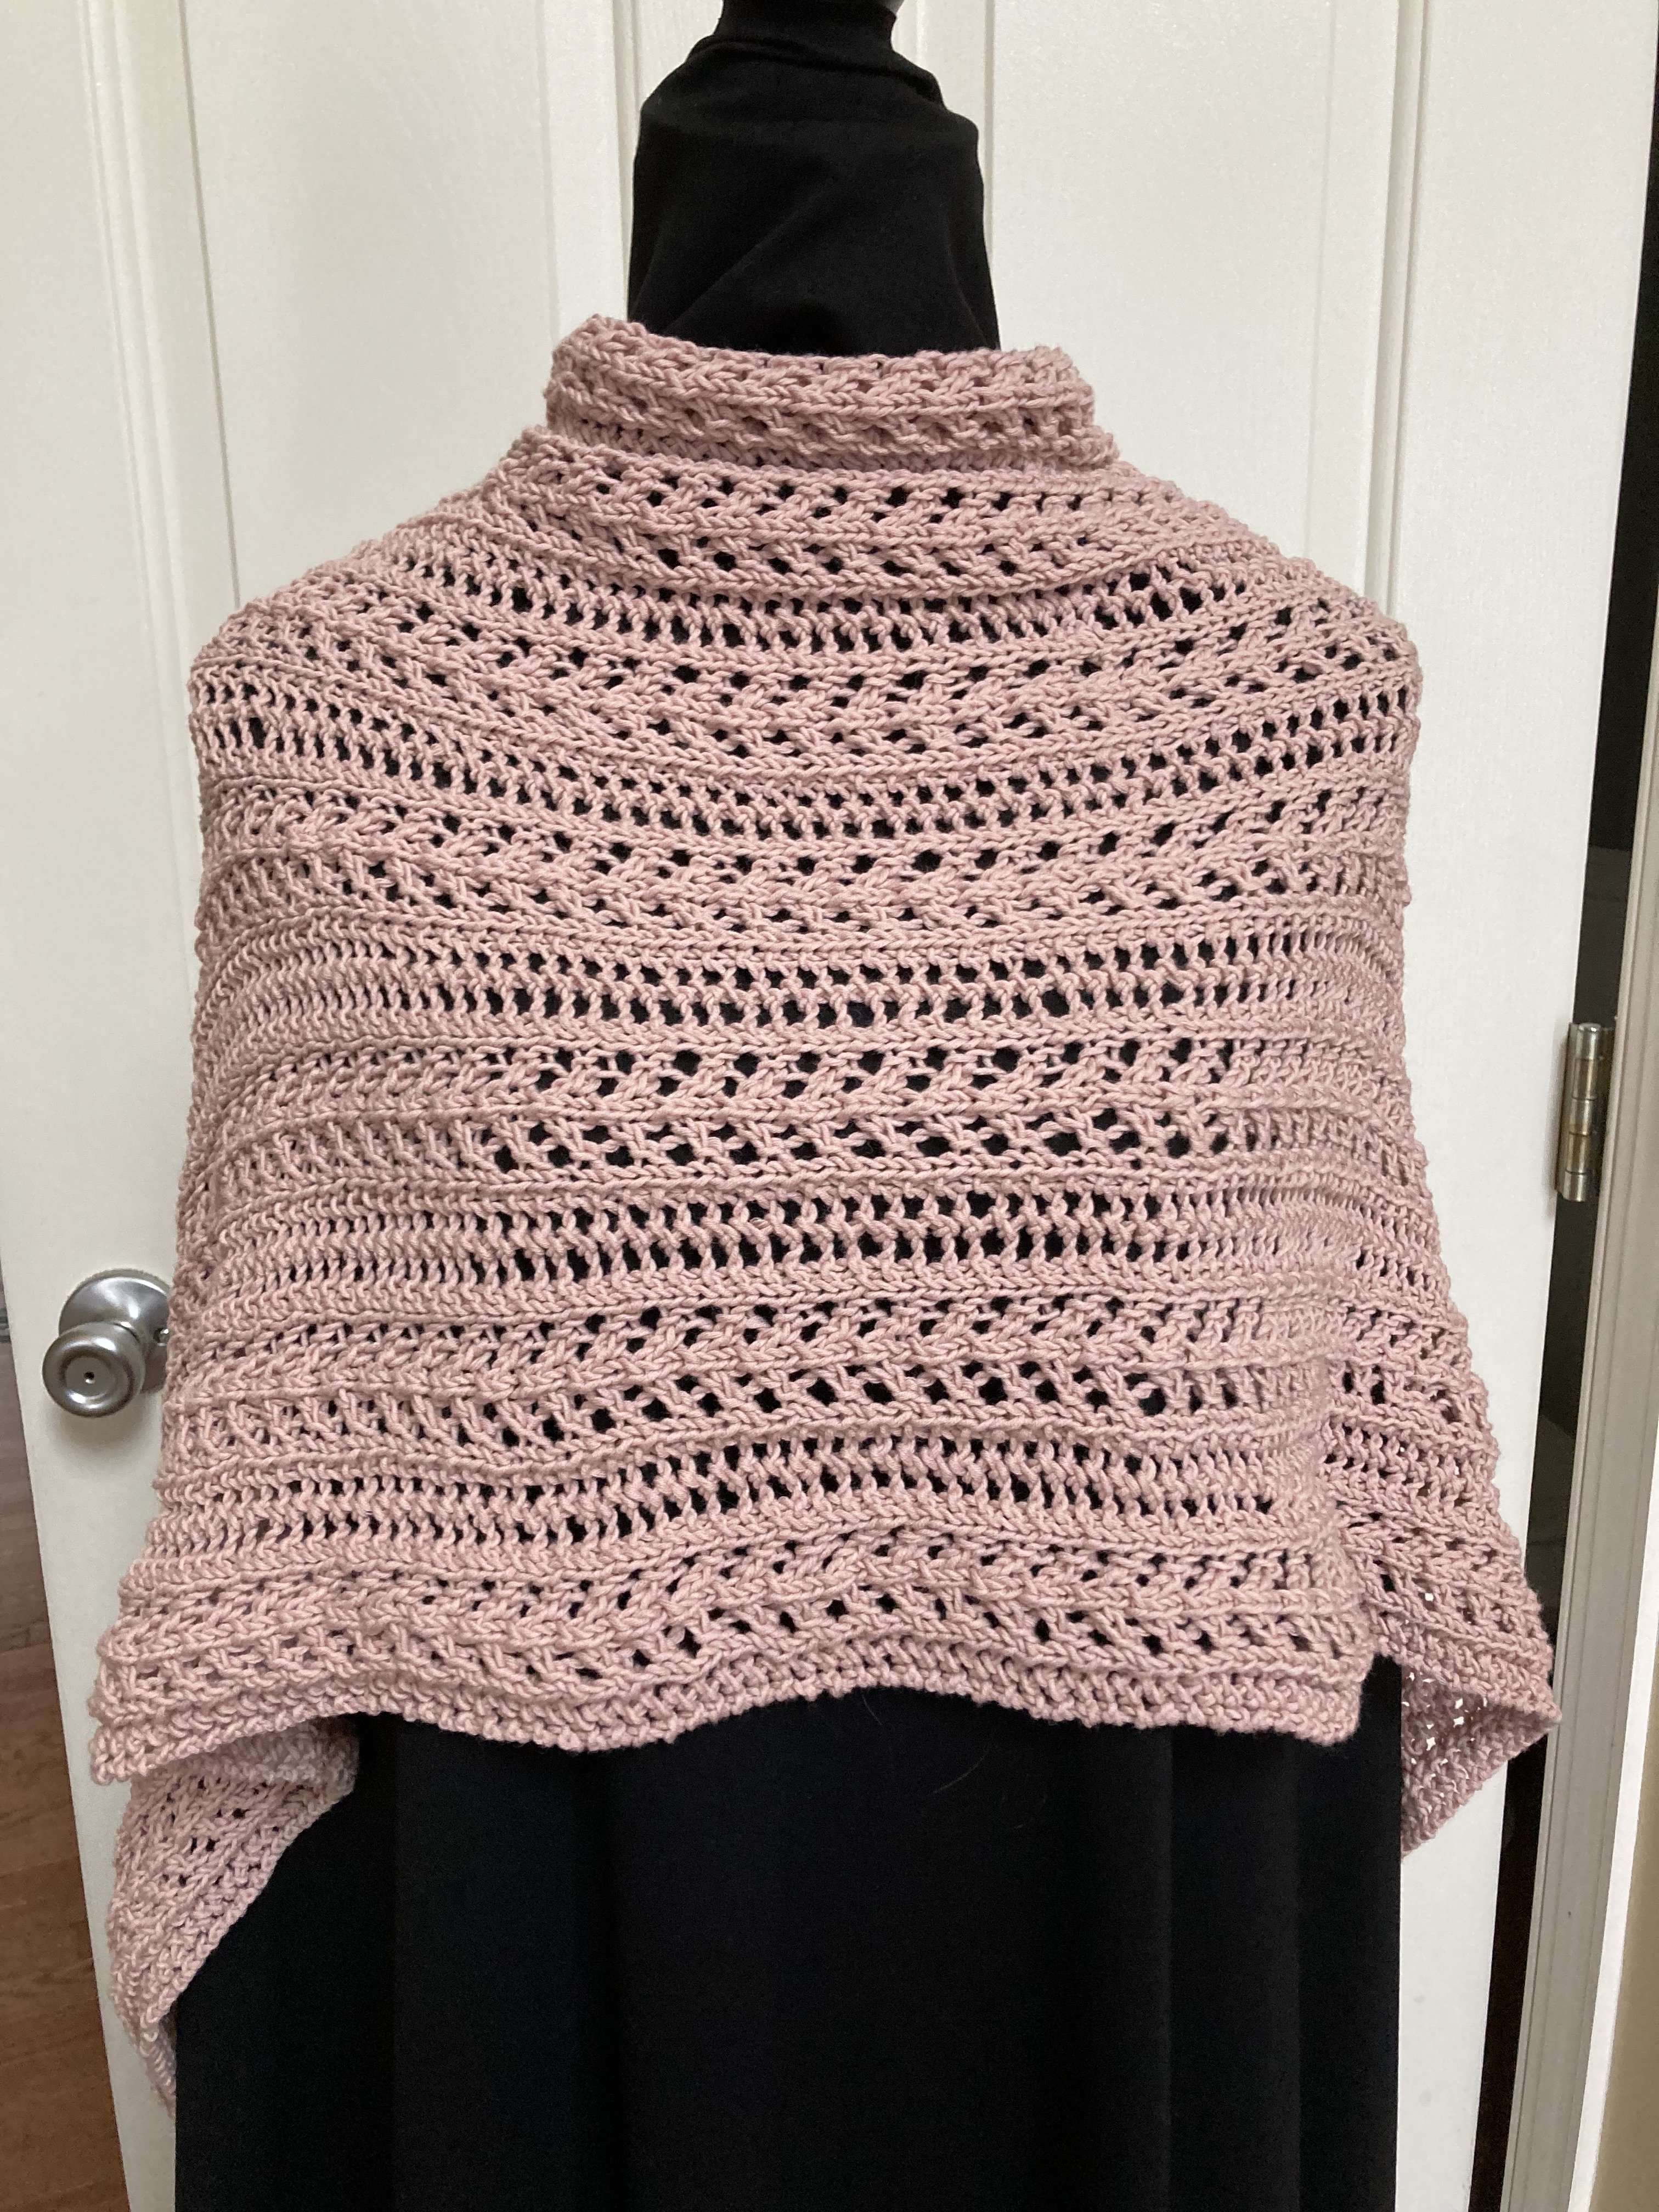 Pink lace shawl hand knit